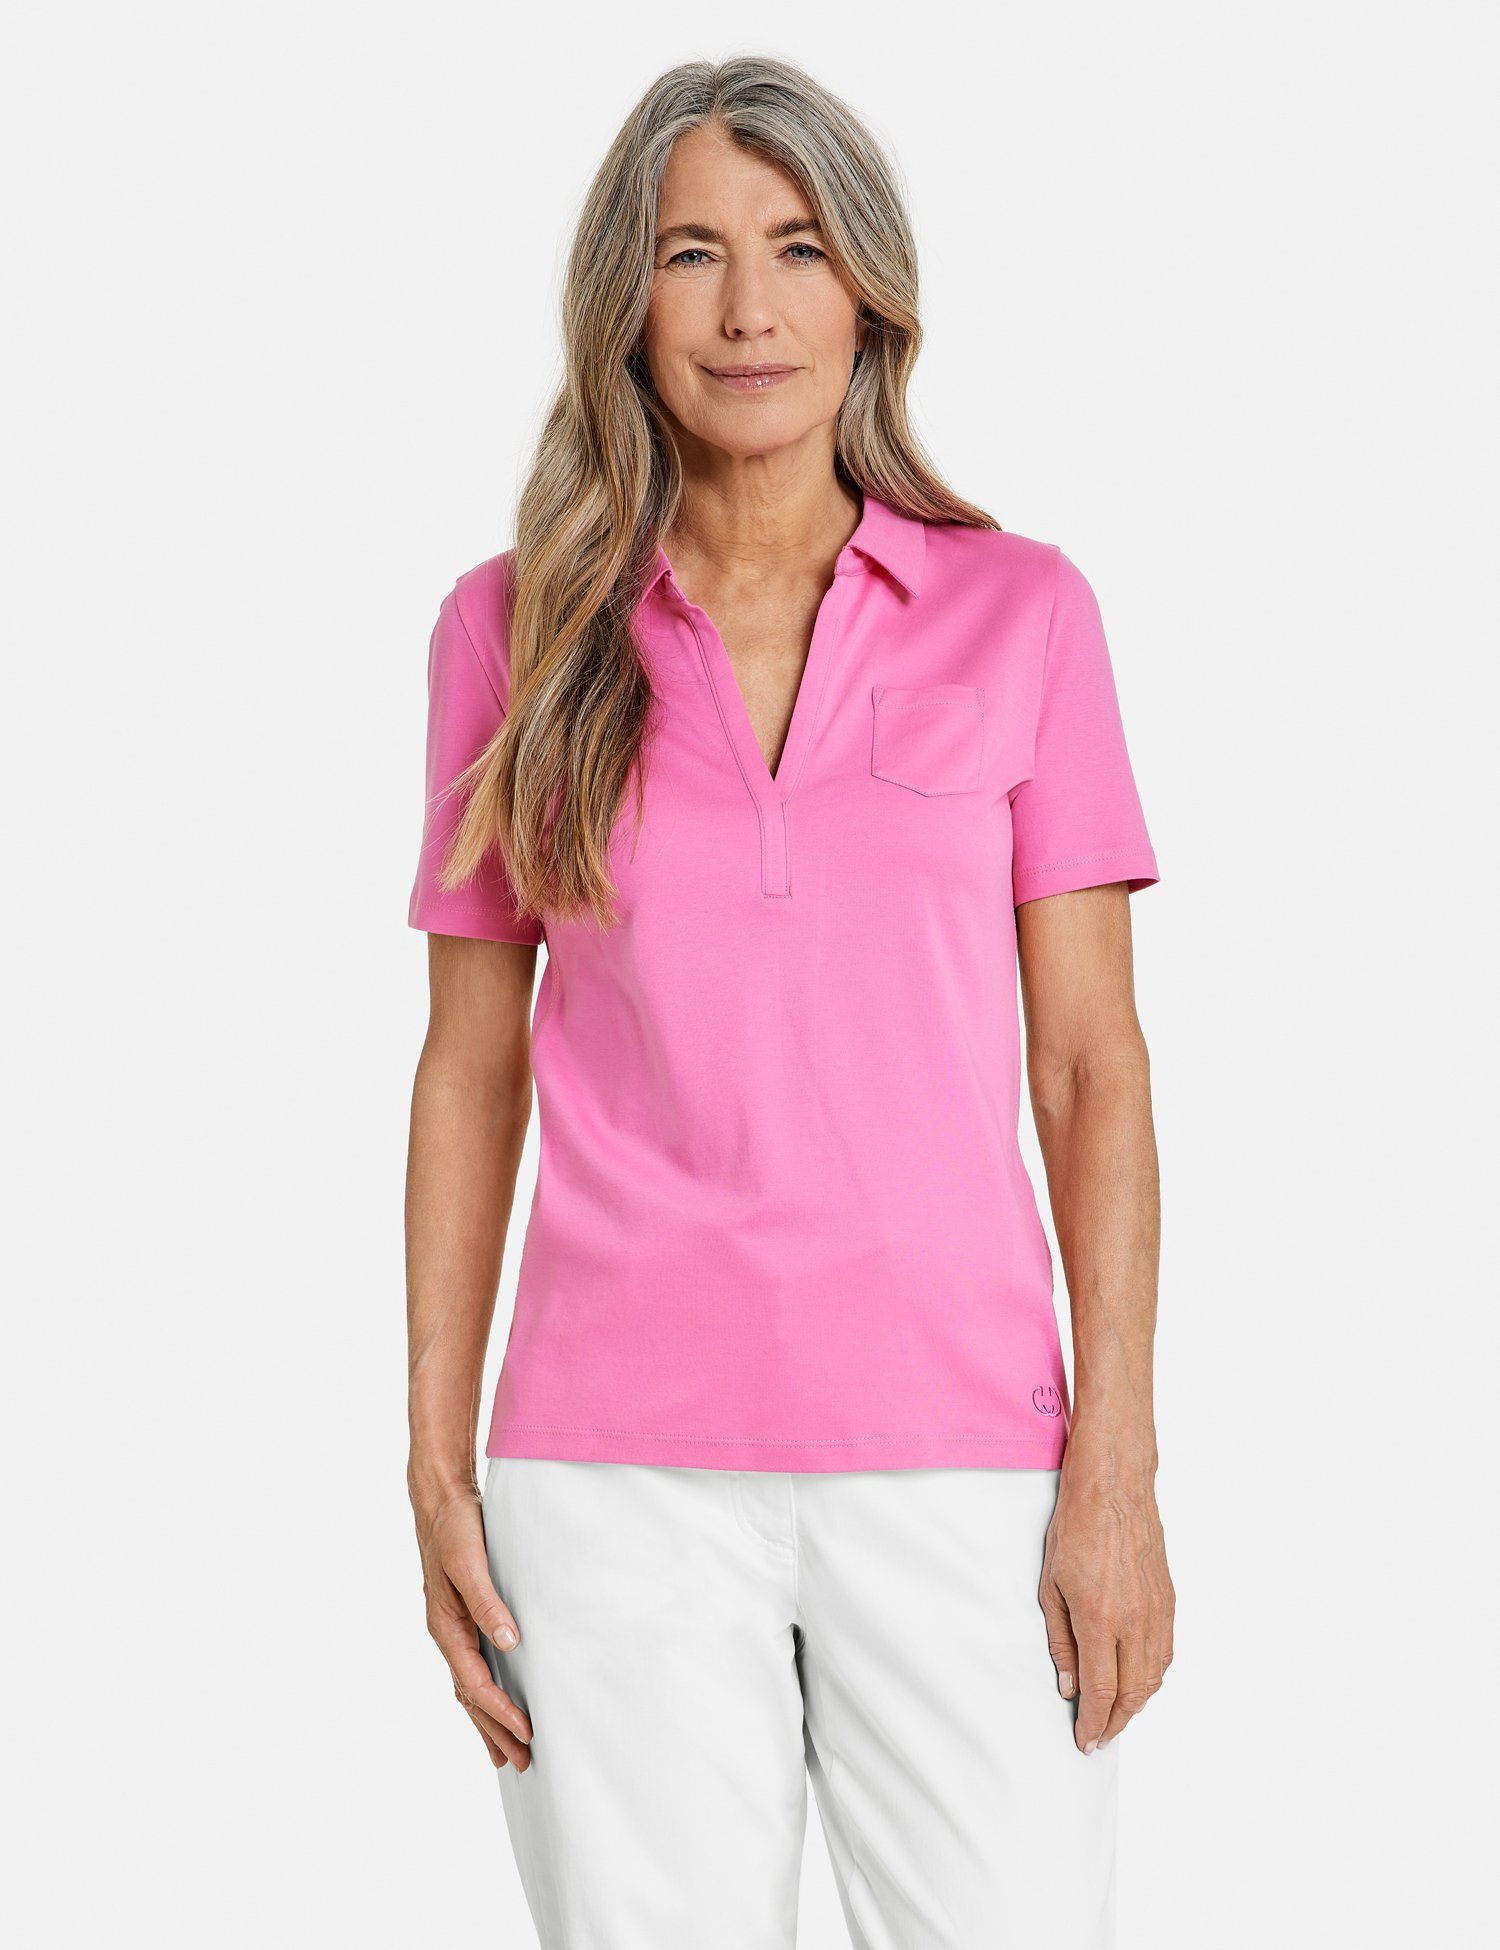 Poloshirt Pink WEBER GERRY Poloshirt Kurzarm Soft